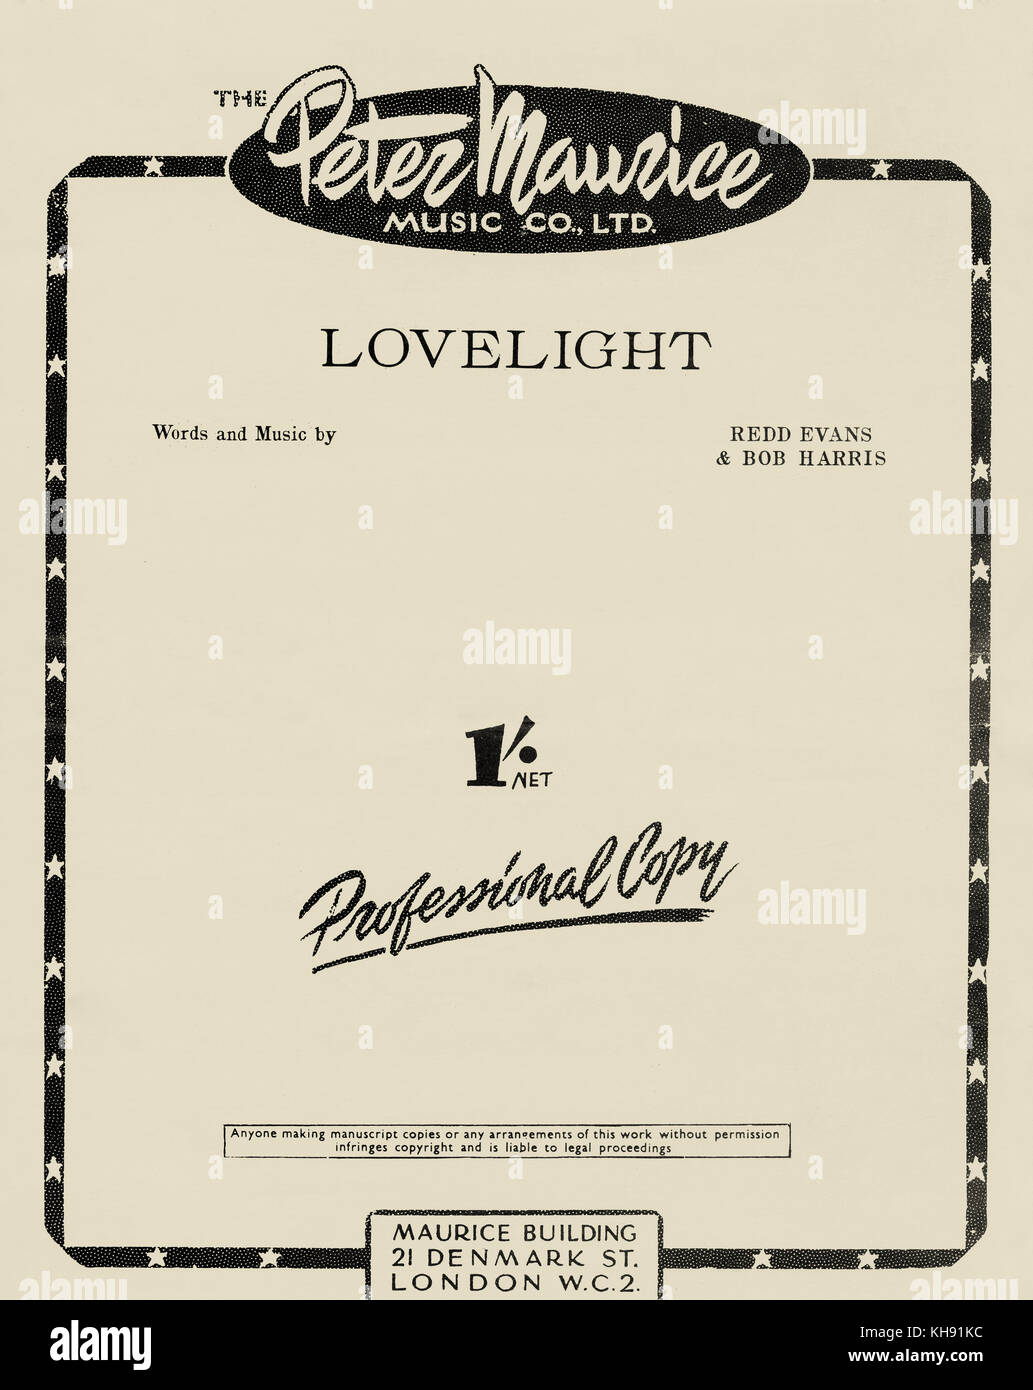 Lovelight - canzone con parole e musica da Redd Evans e Bob Harris. Punteggio ottenuto il coperchio. Pulished da Peter Maurice musica Co Ltd, Londra, Regno Unito, 1952. Foto Stock